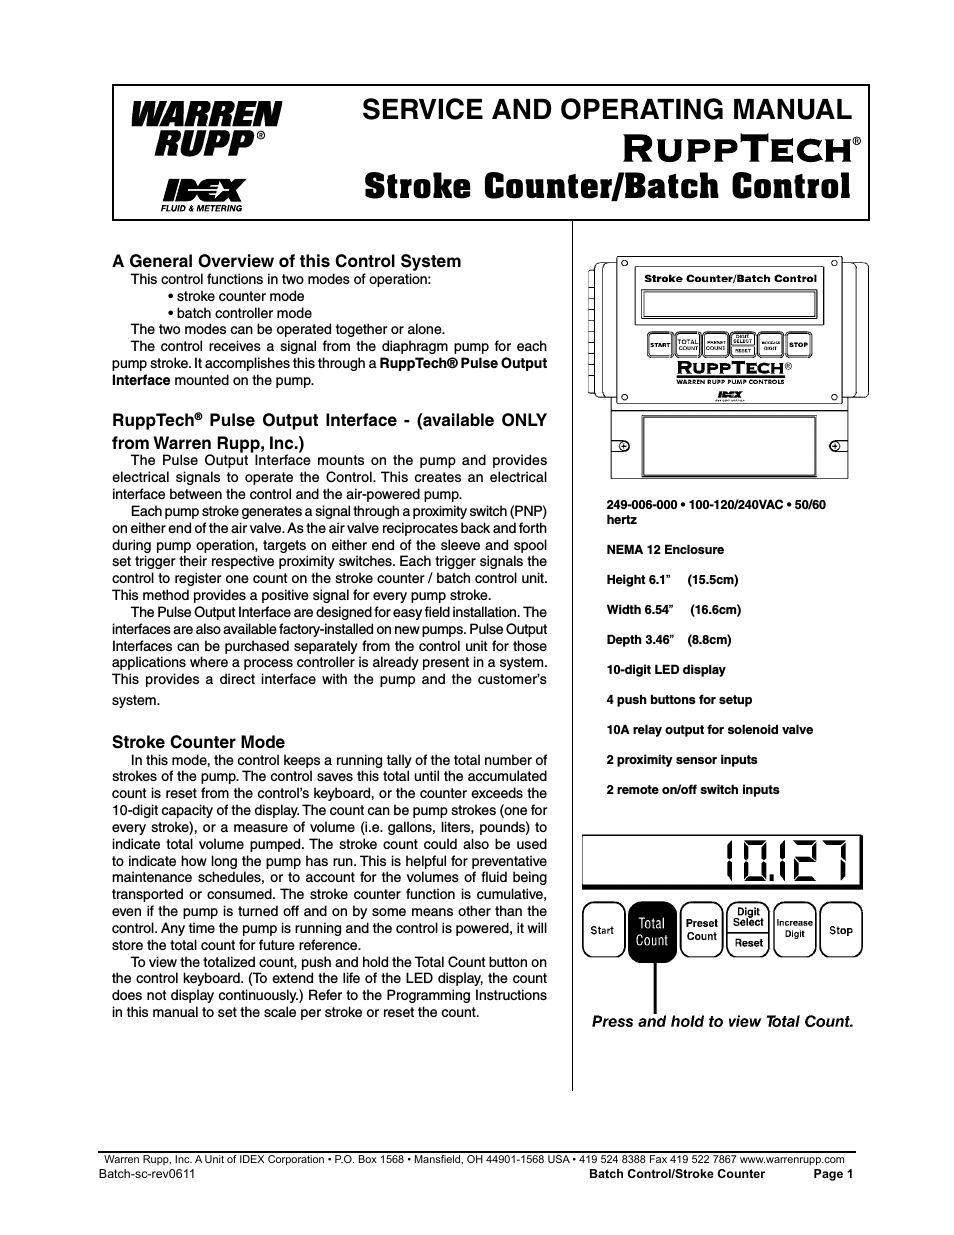 RuppTech Stroke Counter/Batch Control